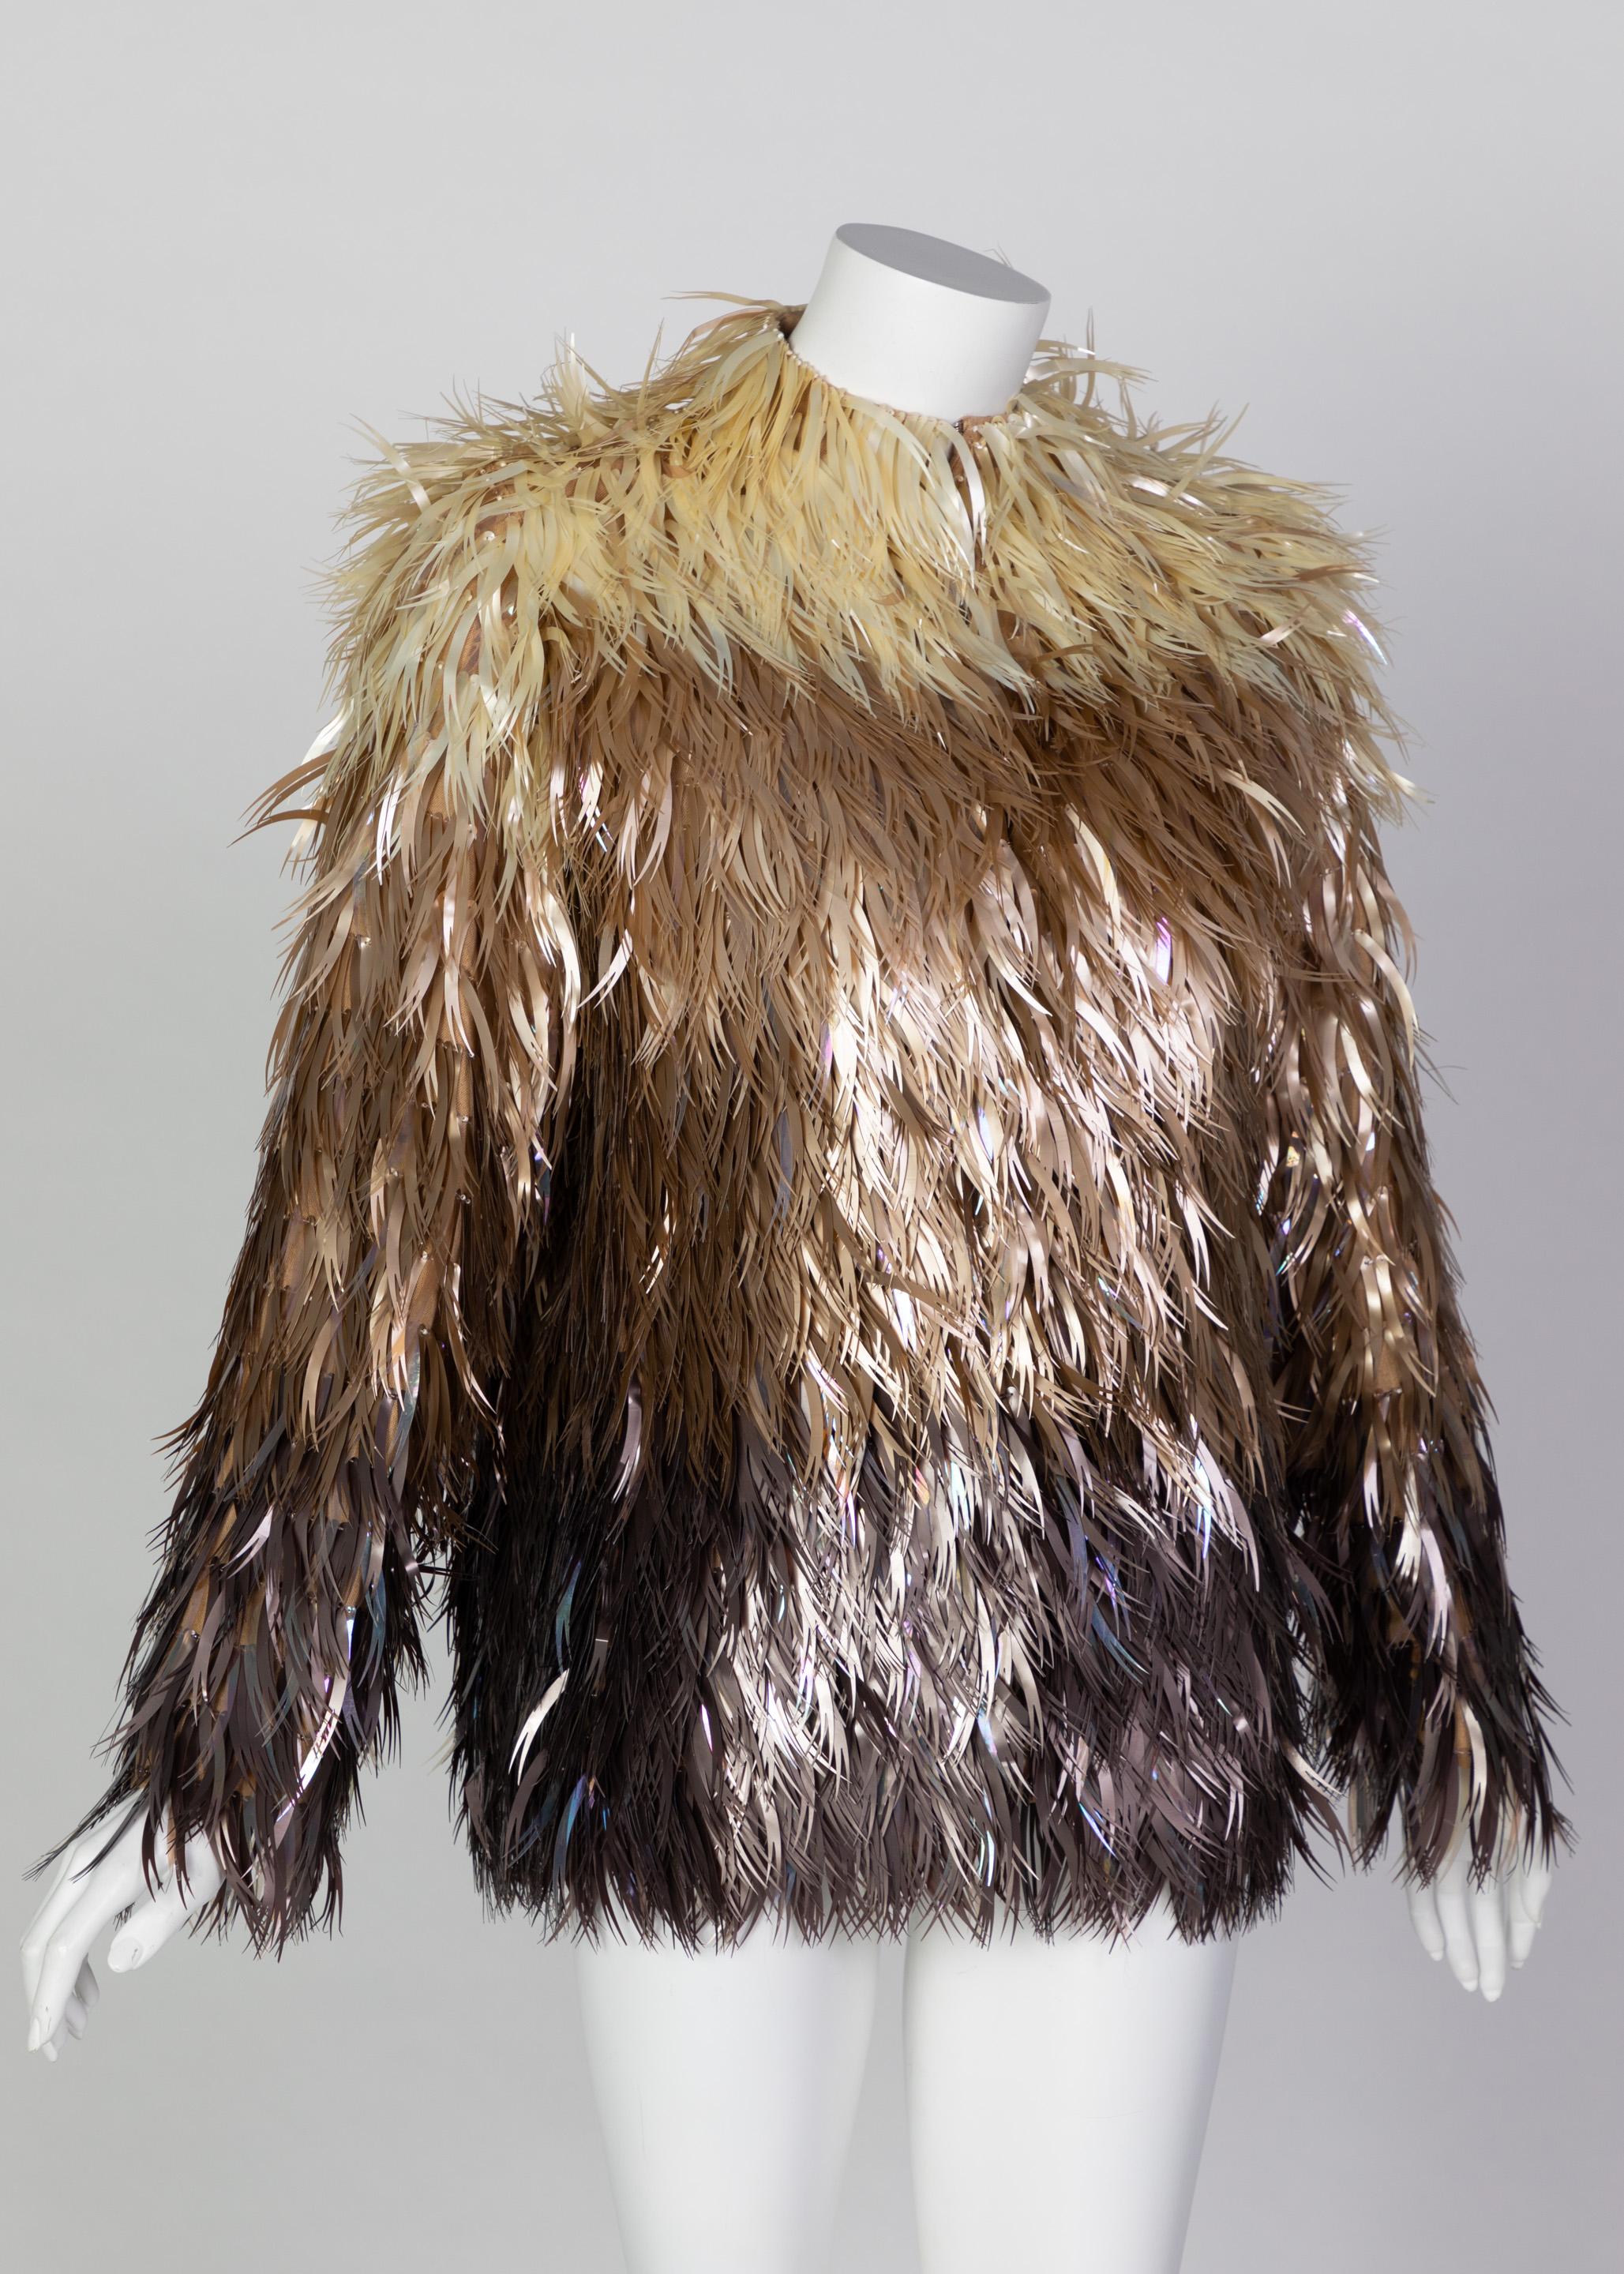 Marron Chloé Stella McCartney - Manteau en plumes végétales, plastique et métal, défilé A/H 2000 en vente